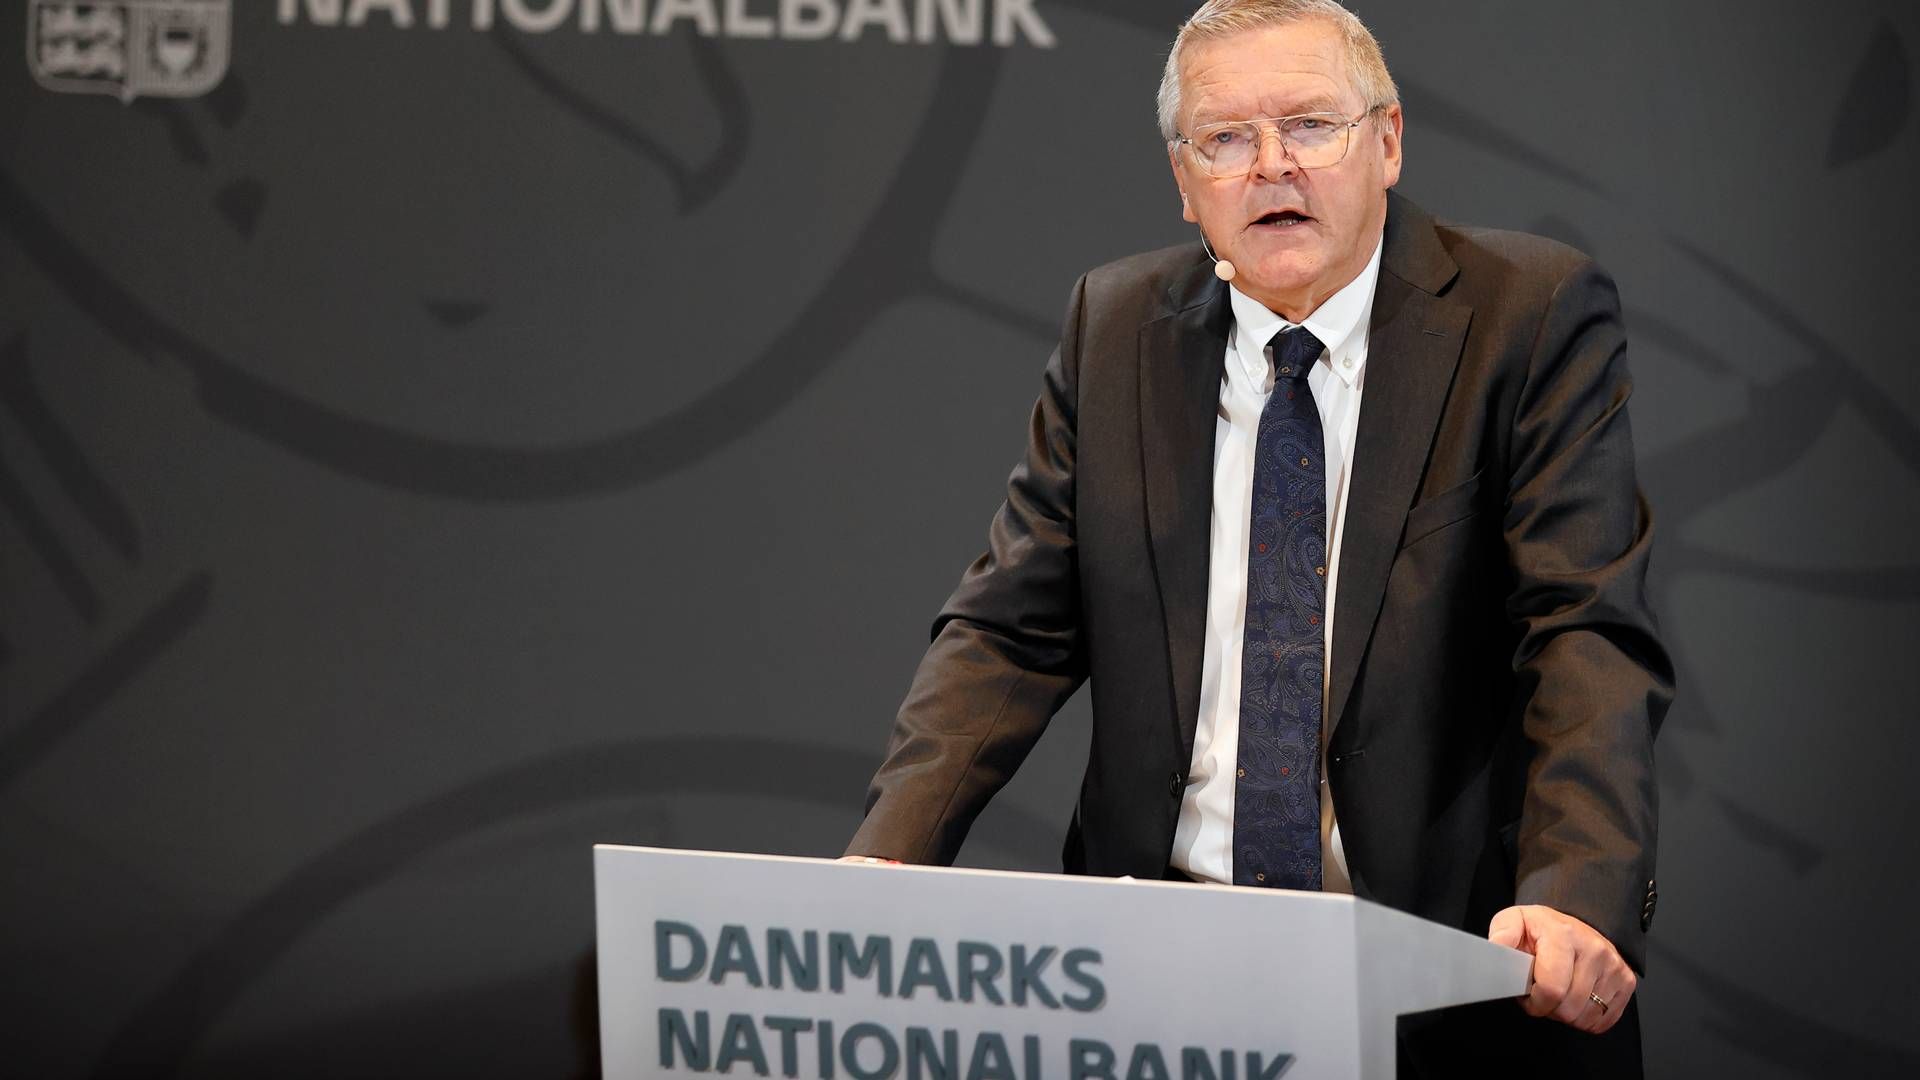 Nationalbankdirektør Lars Rohde har sidste arbejdsdag 31. januar. | Foto: Jens Dresling